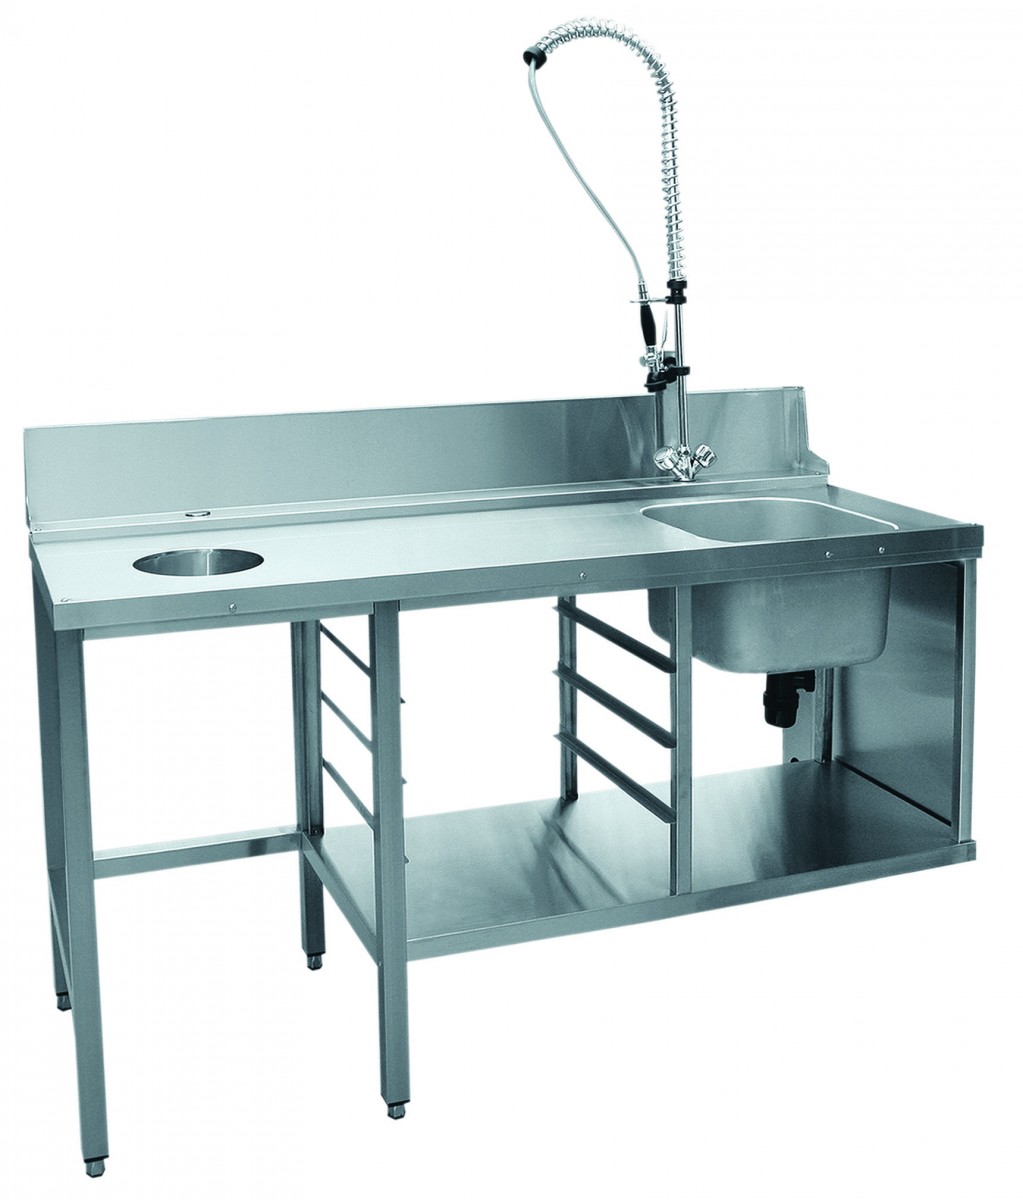 Стол предмоечный СПМП-6-3 для купольных посудомоечных машин